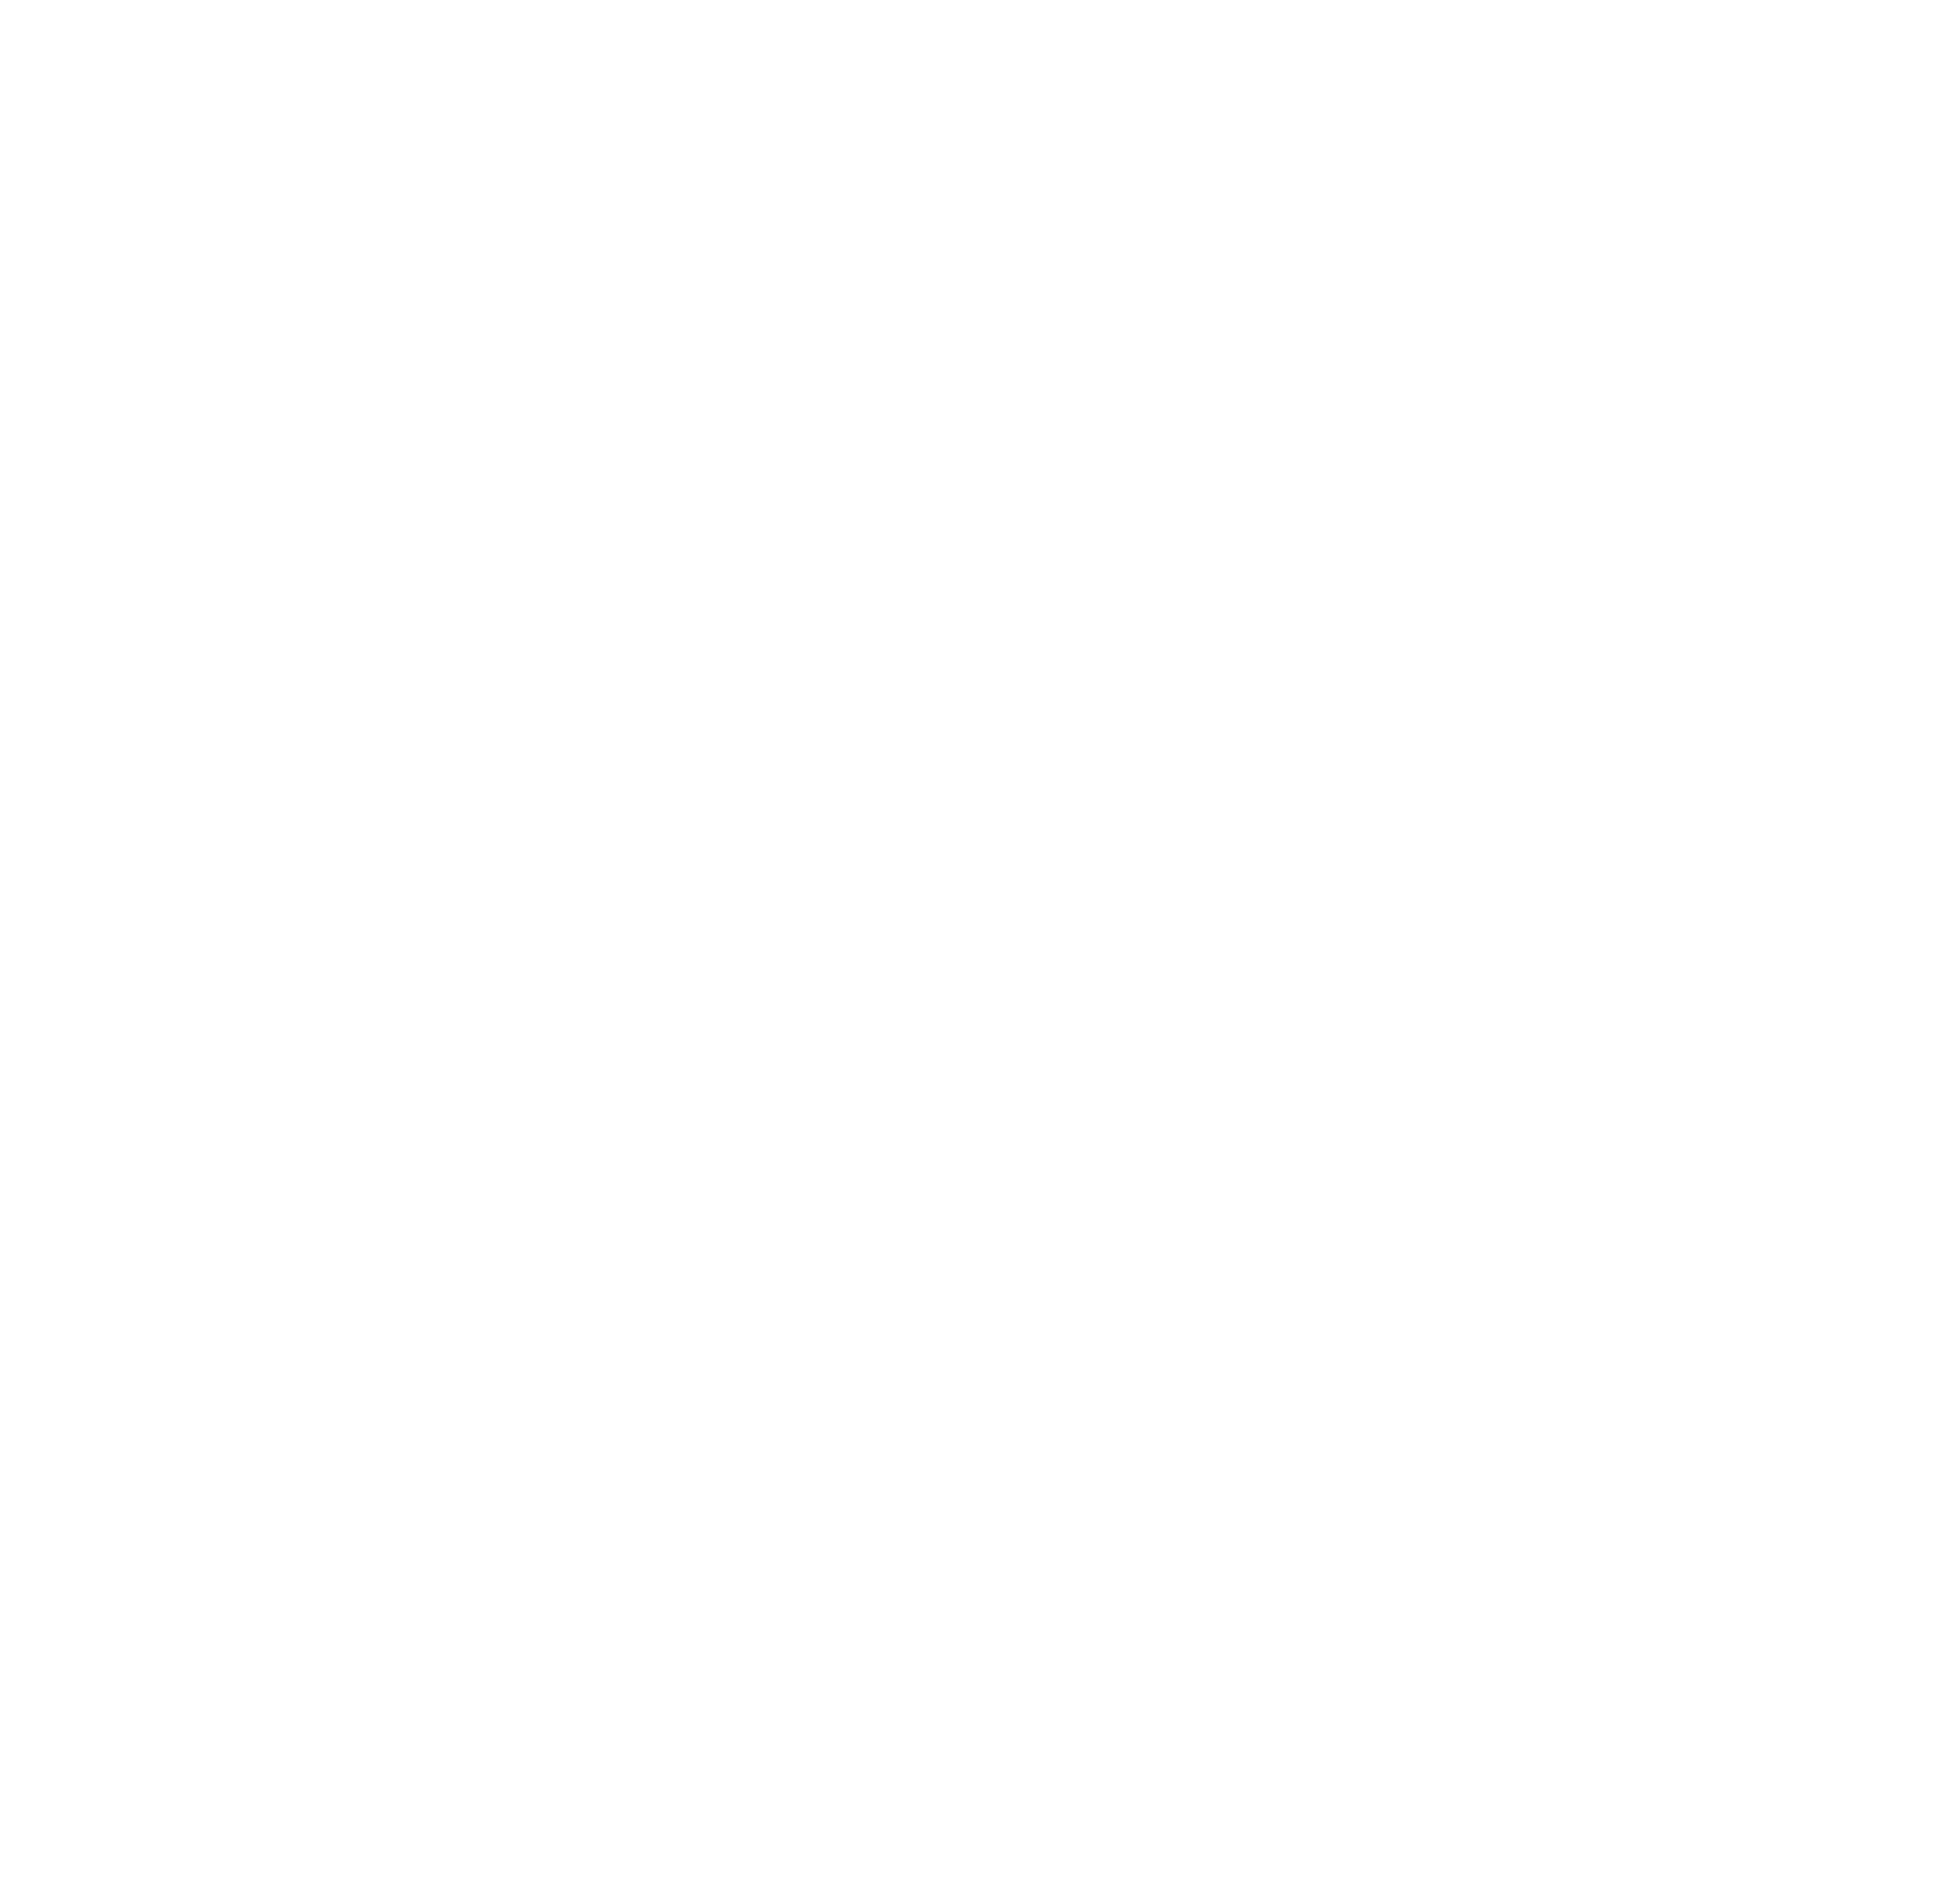 Hamnah